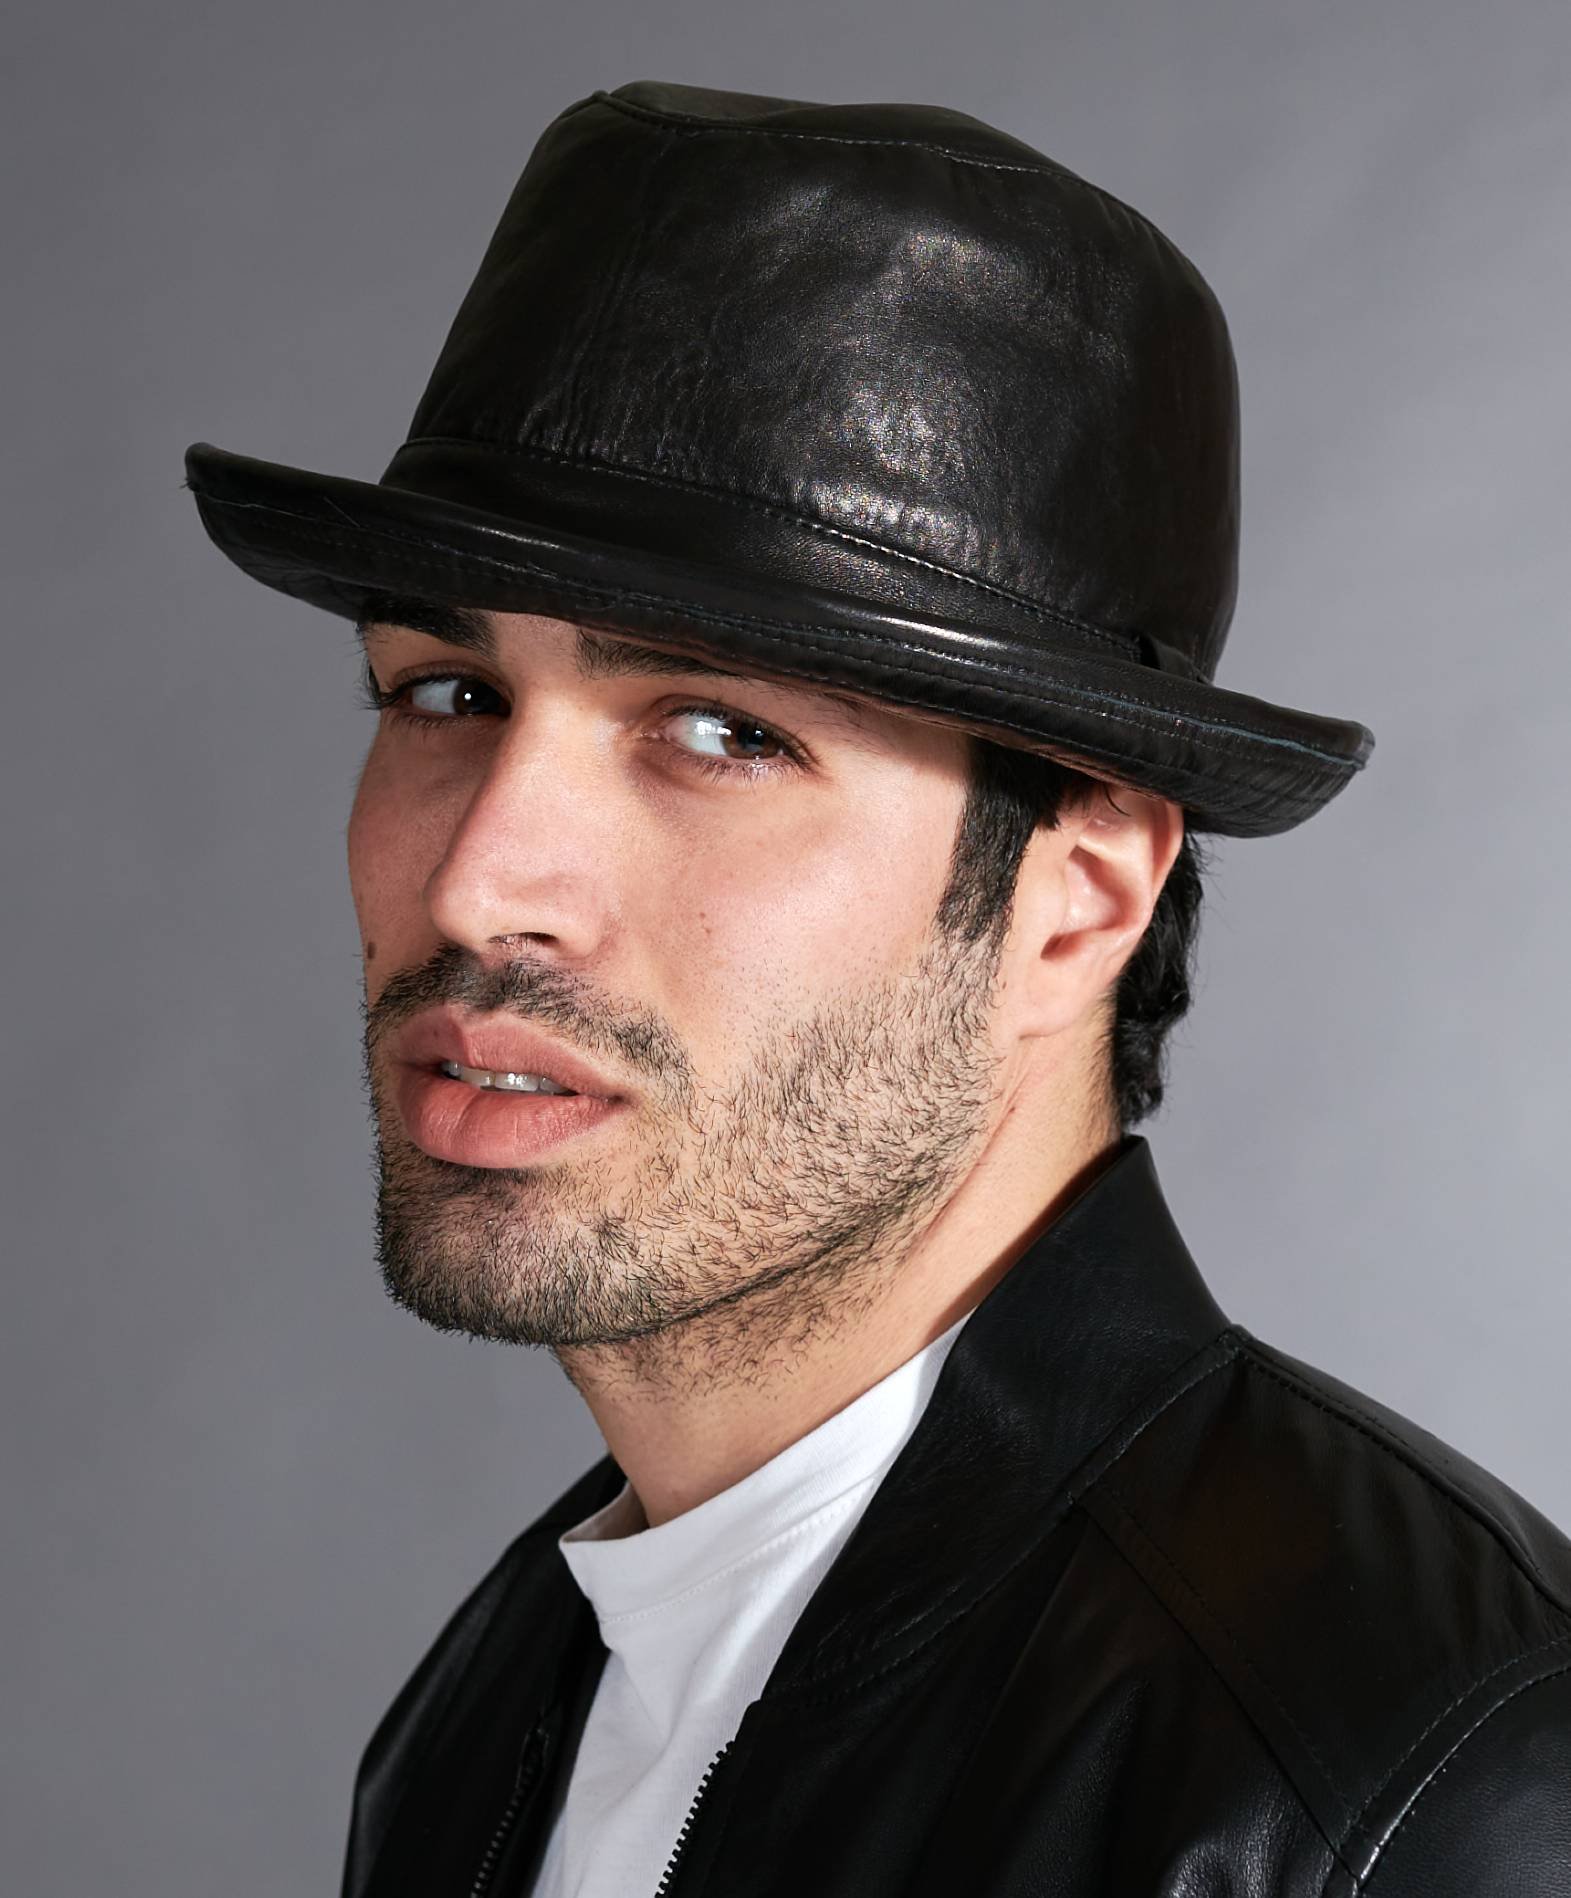 d'arienzo cappello da uomo in pelle nera stile borsalino , seleziona taglia xl (61cm), colore, nero, unisex